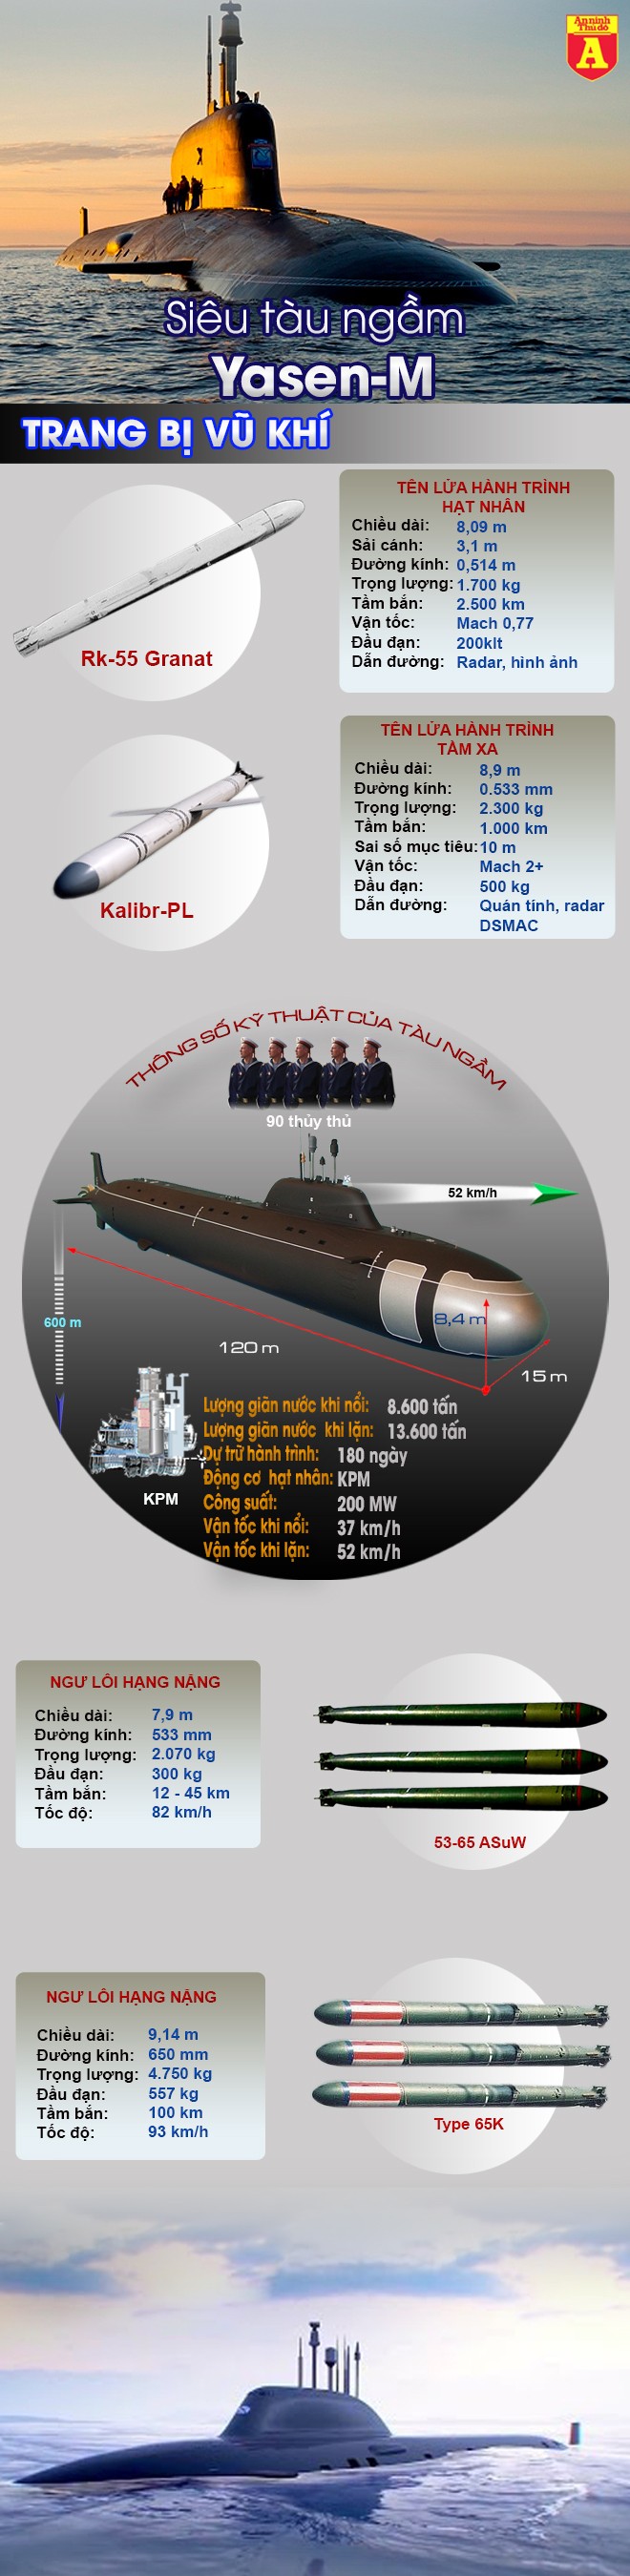 [Infographic] Nga nhận ba siêu tàu ngầm hạt nhân, tương quan sức mạnh sòng phẳng với Mỹ bắt đầu ảnh 2